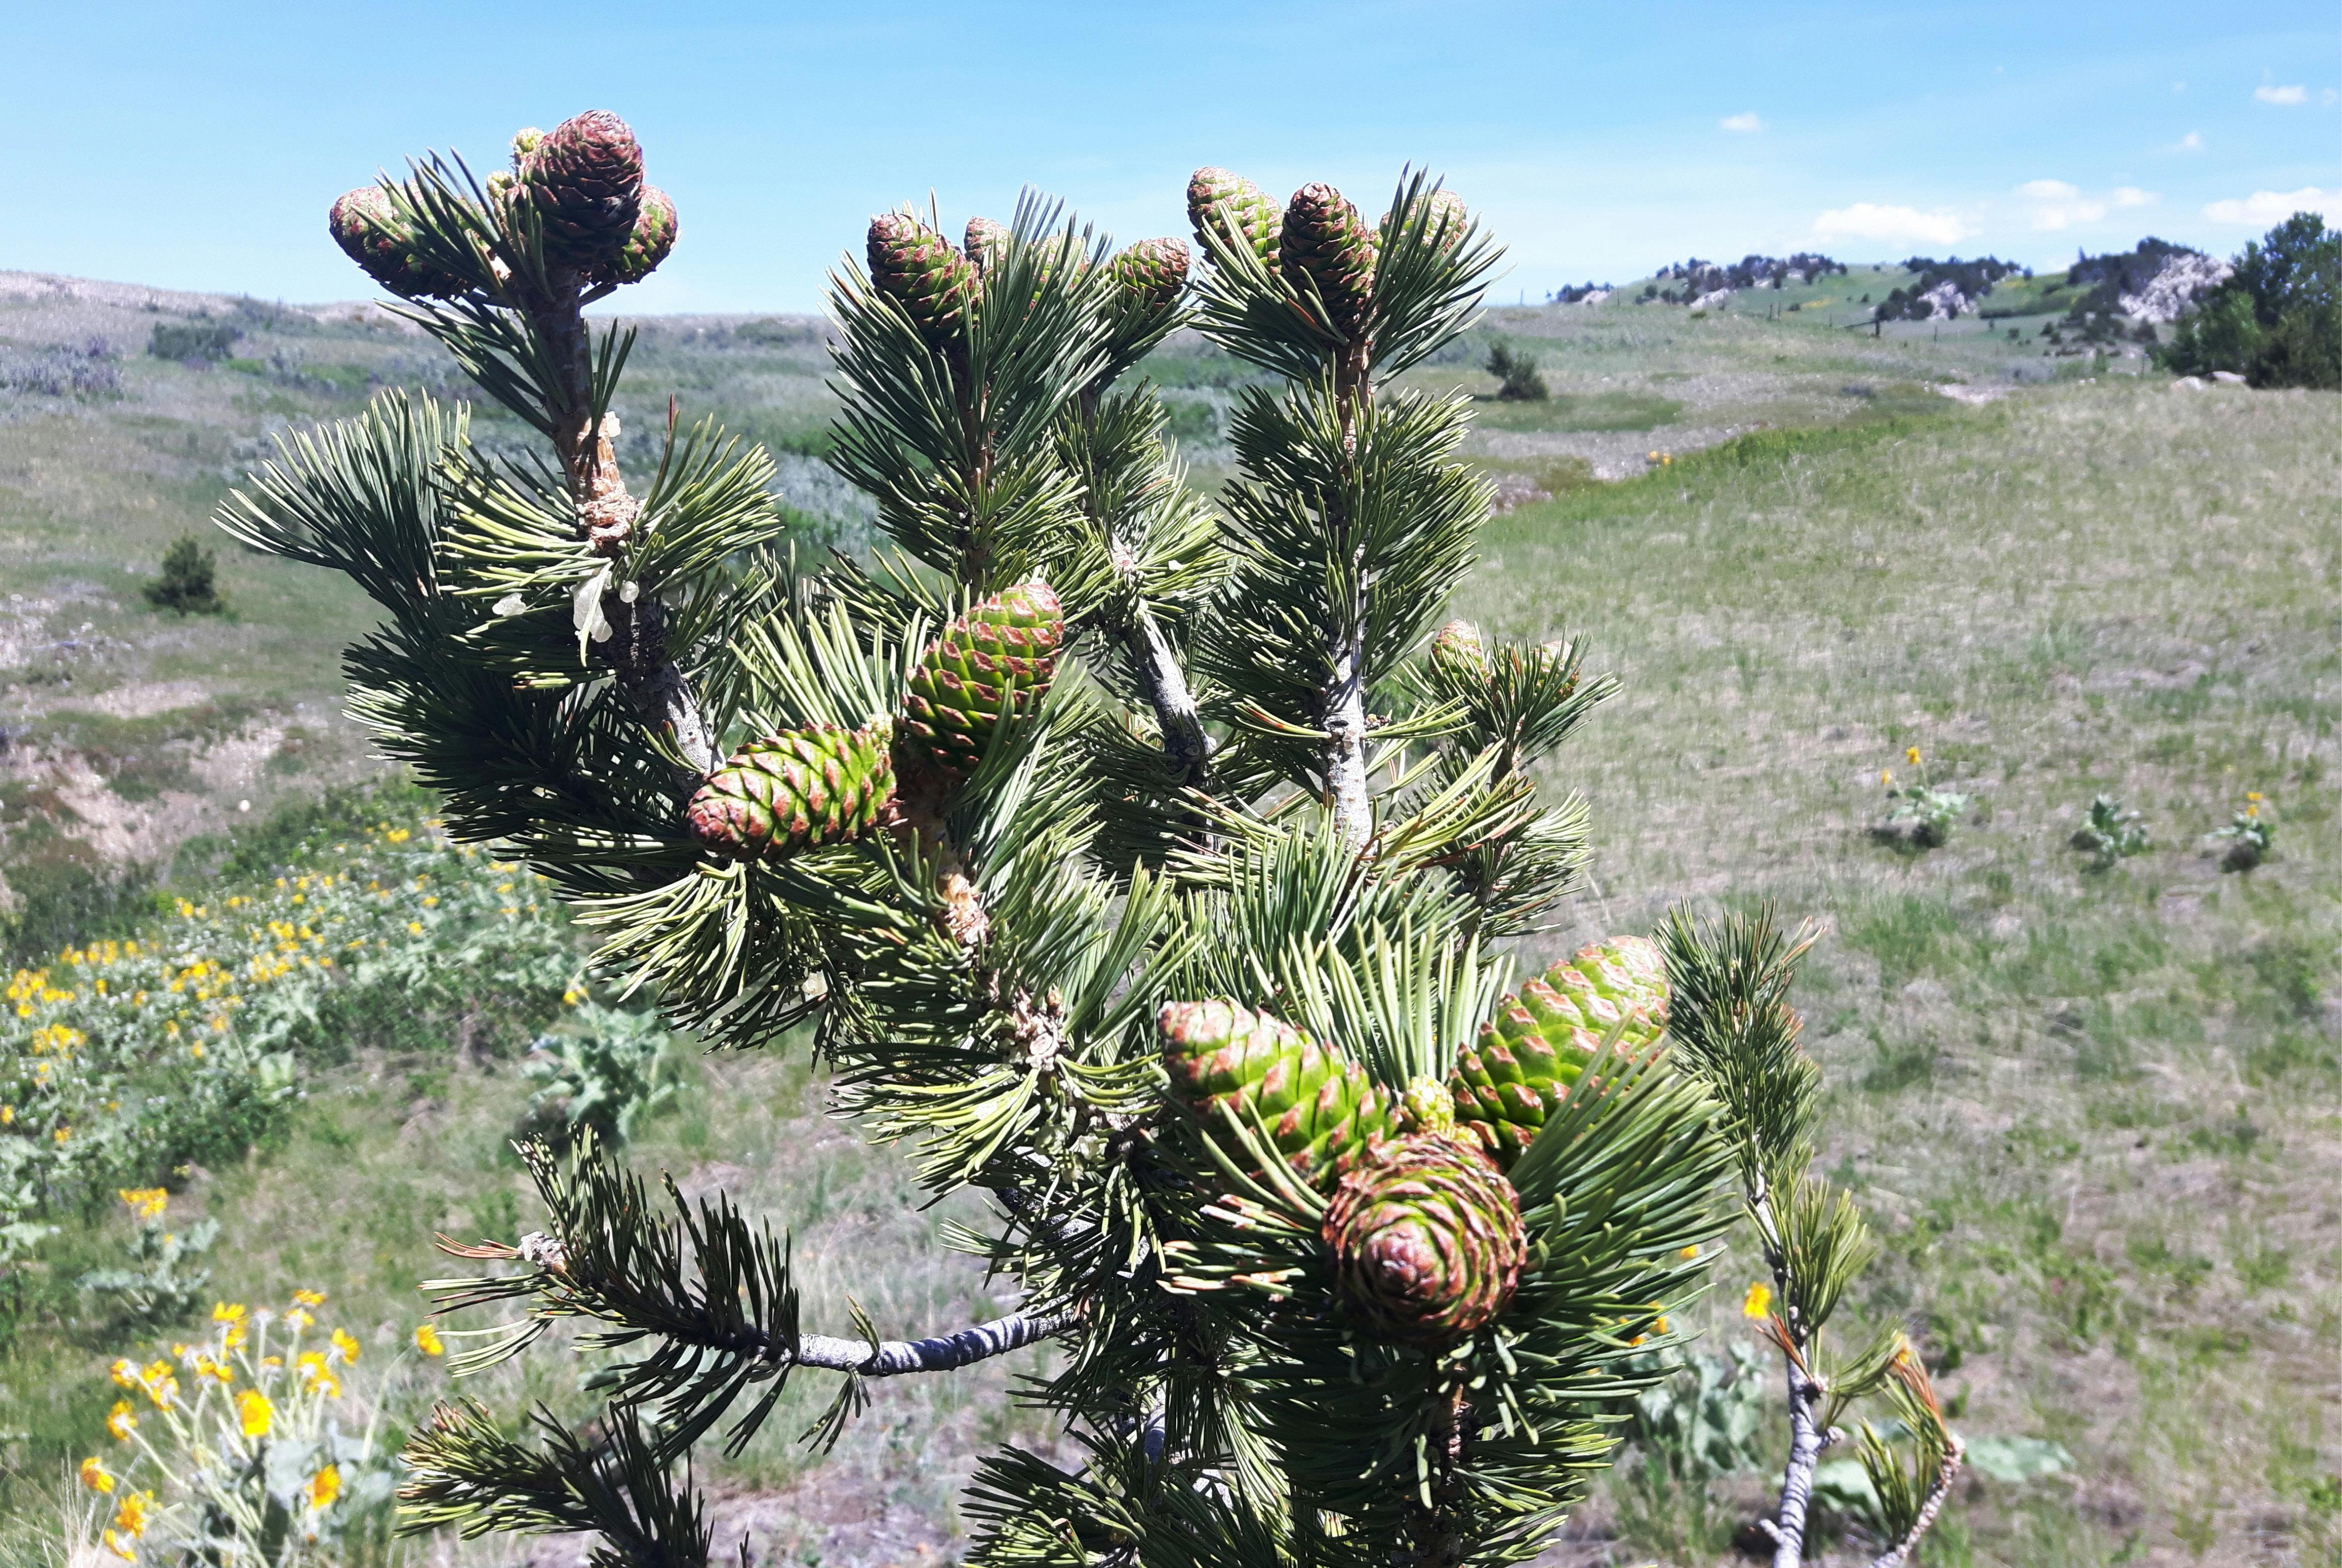 Limber pine cones